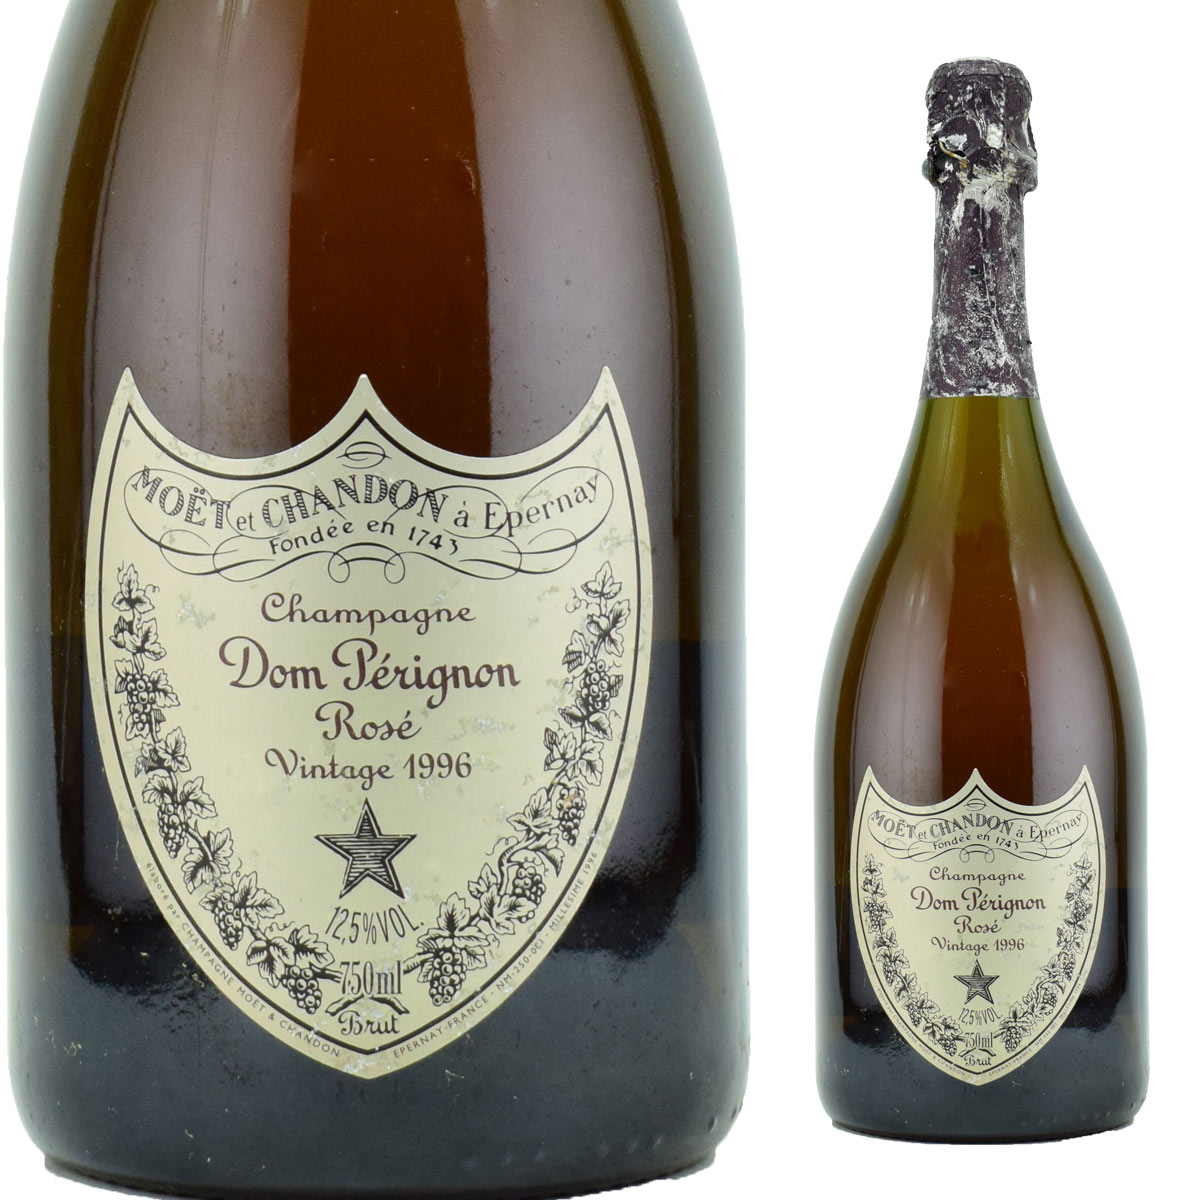 ドン・ペリニヨン・ロゼ　1996　750ml泡　シャンパン　モエ・エ・シャンドン社　送料は無料（送料欄に別途クール代金が加算されます）